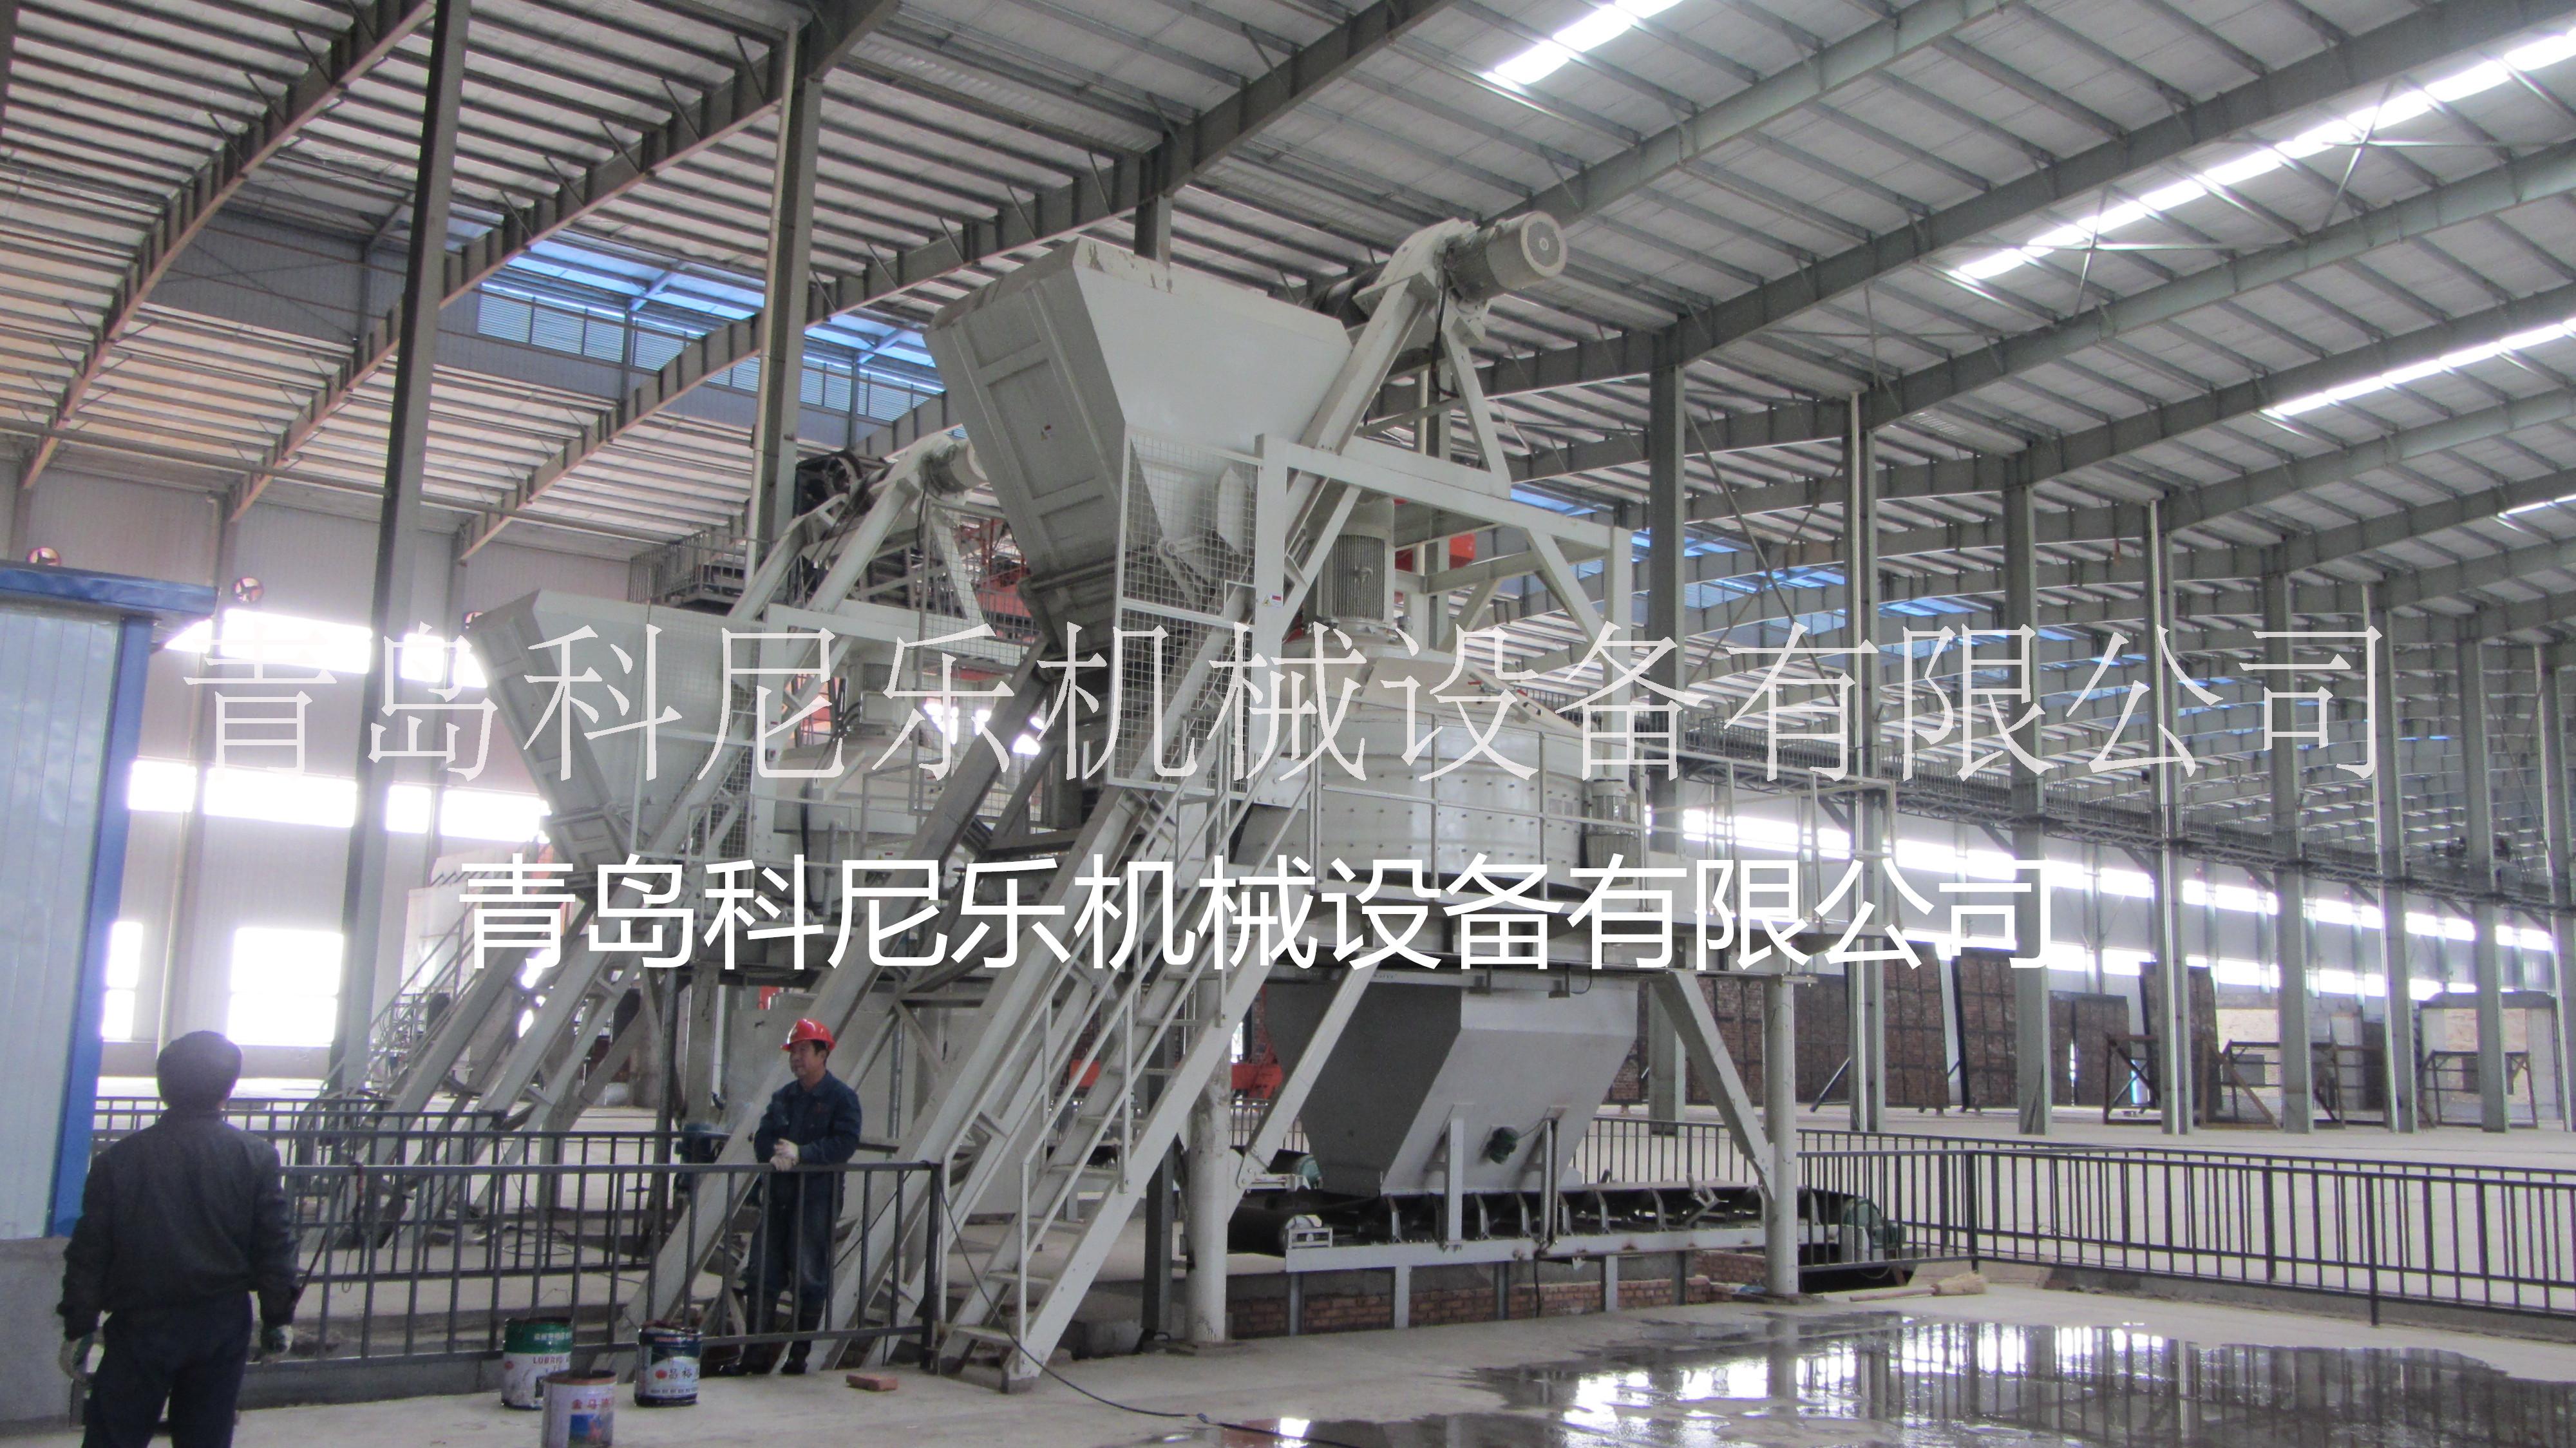 耐火材料混合机点击青岛科尼乐机械设备有限公司